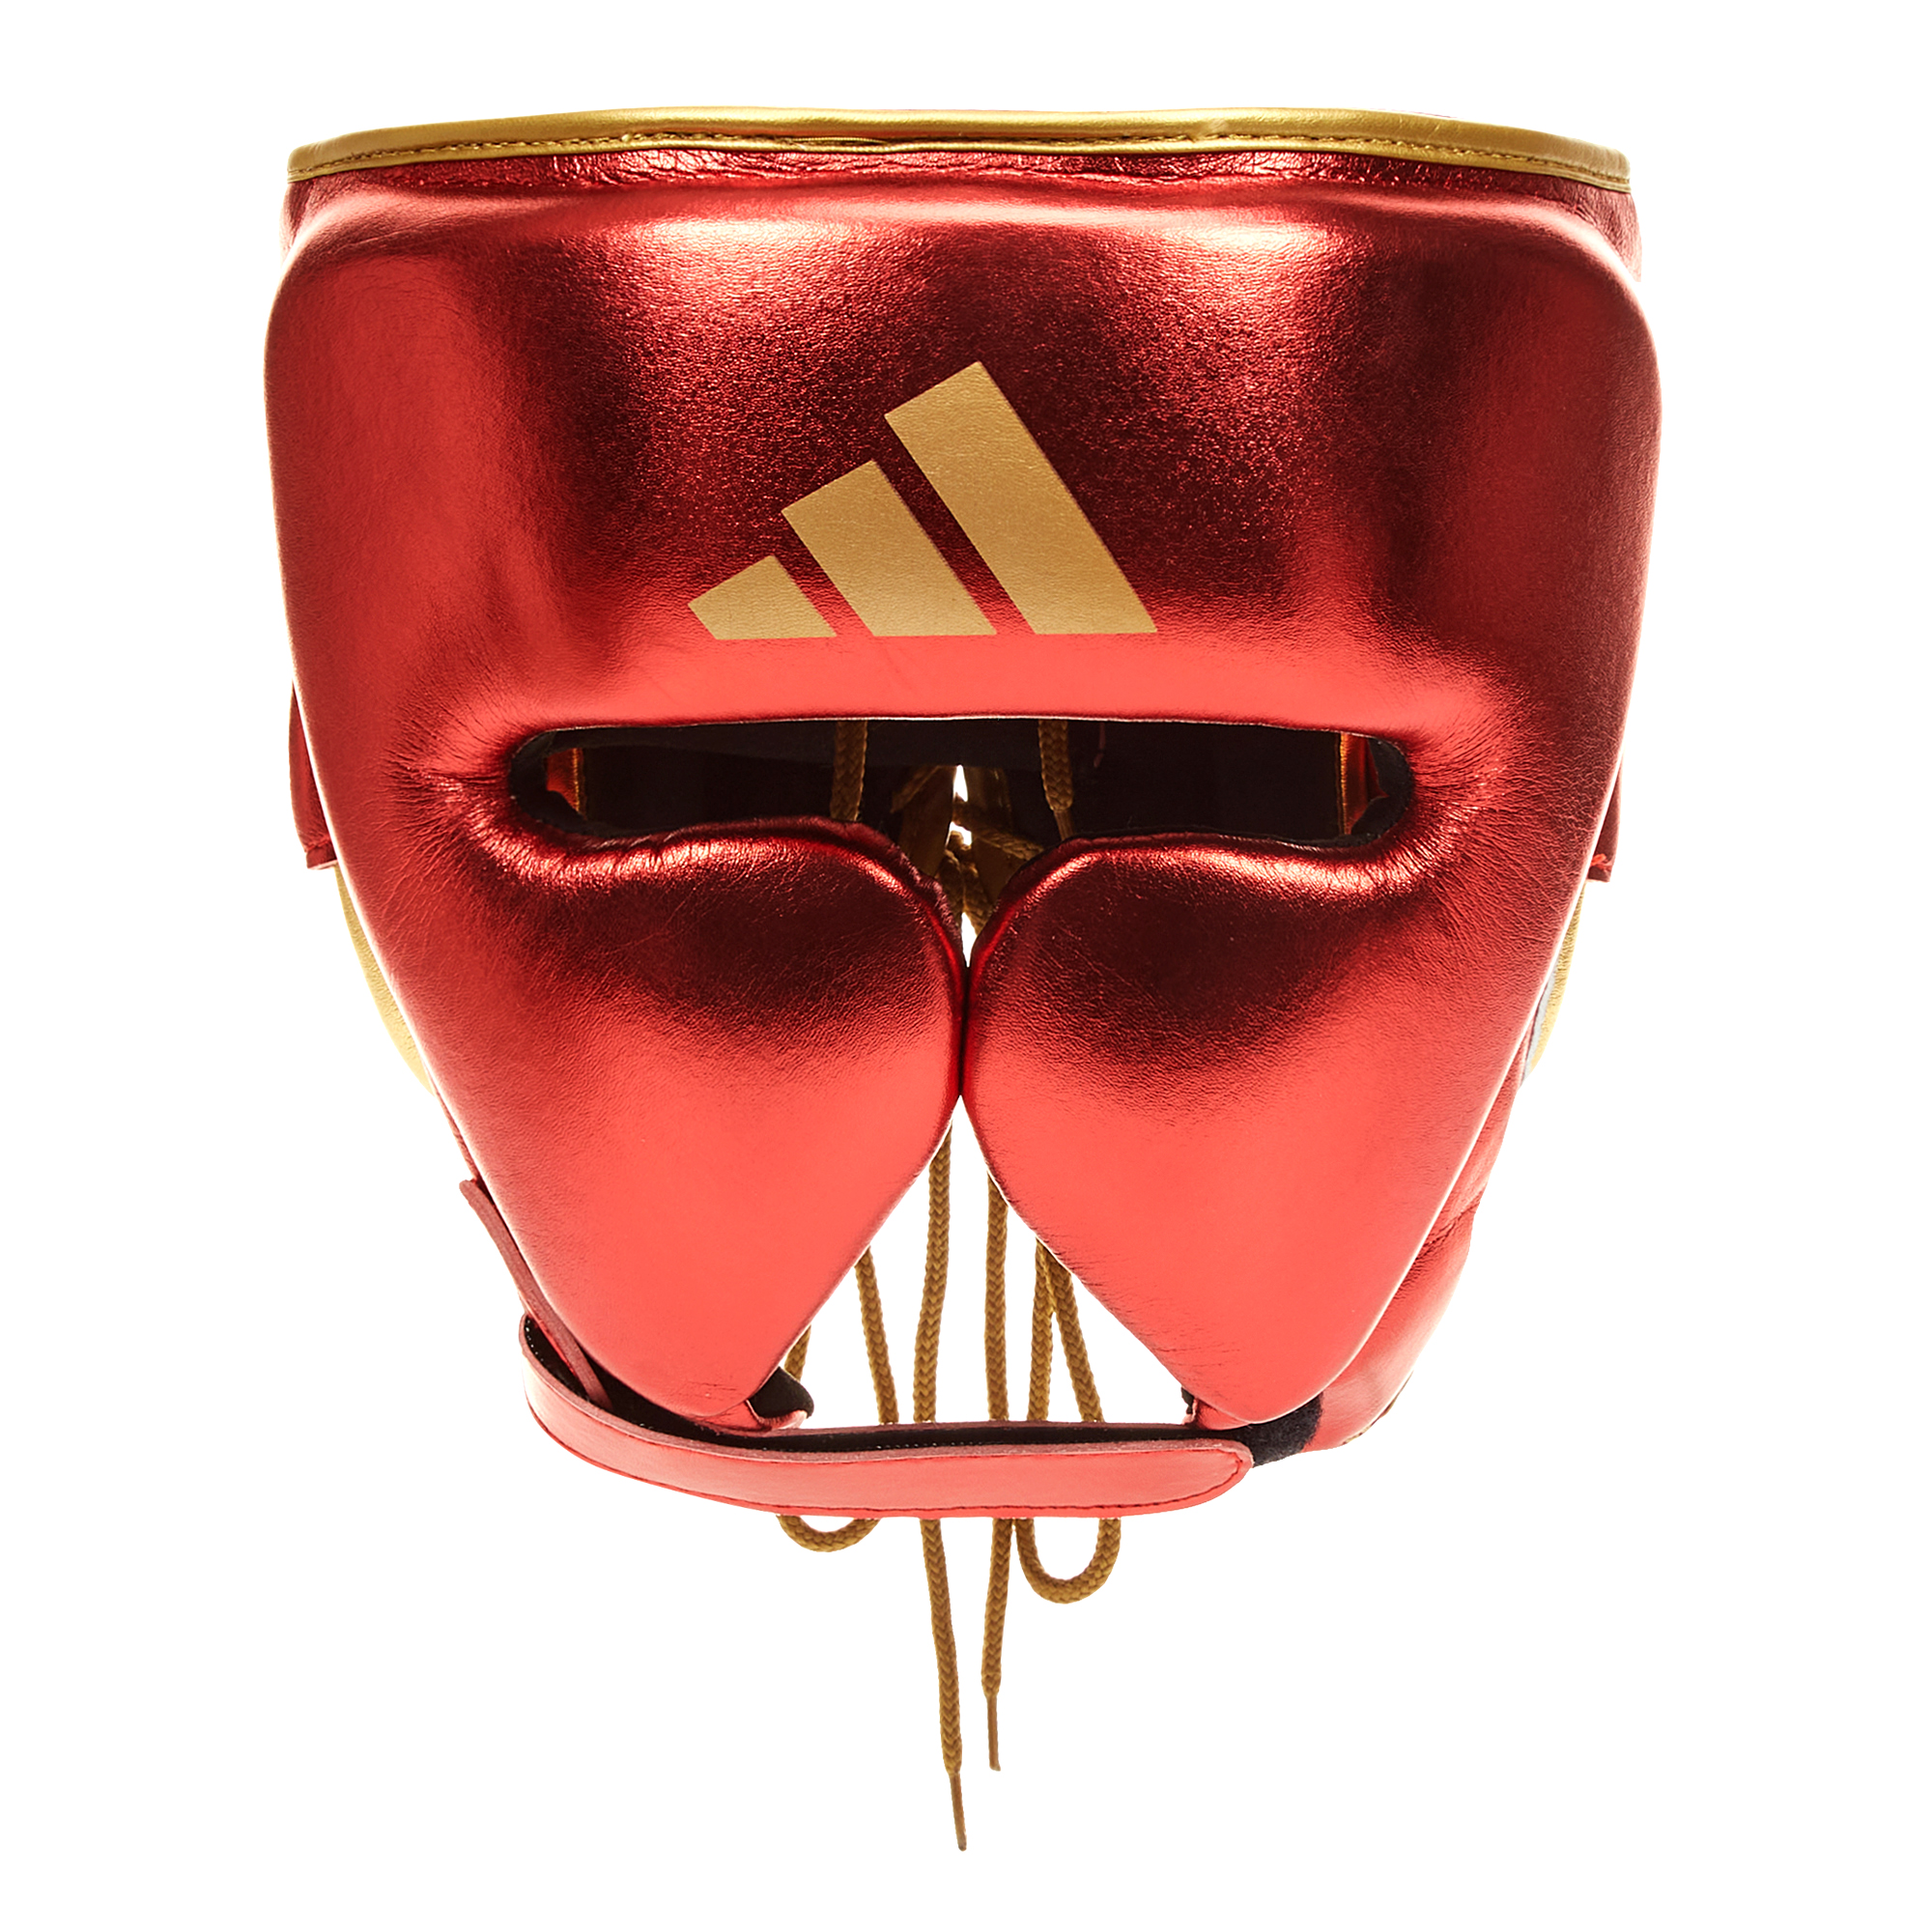 ADISTAR Pro Head Gear - RED/GOLD